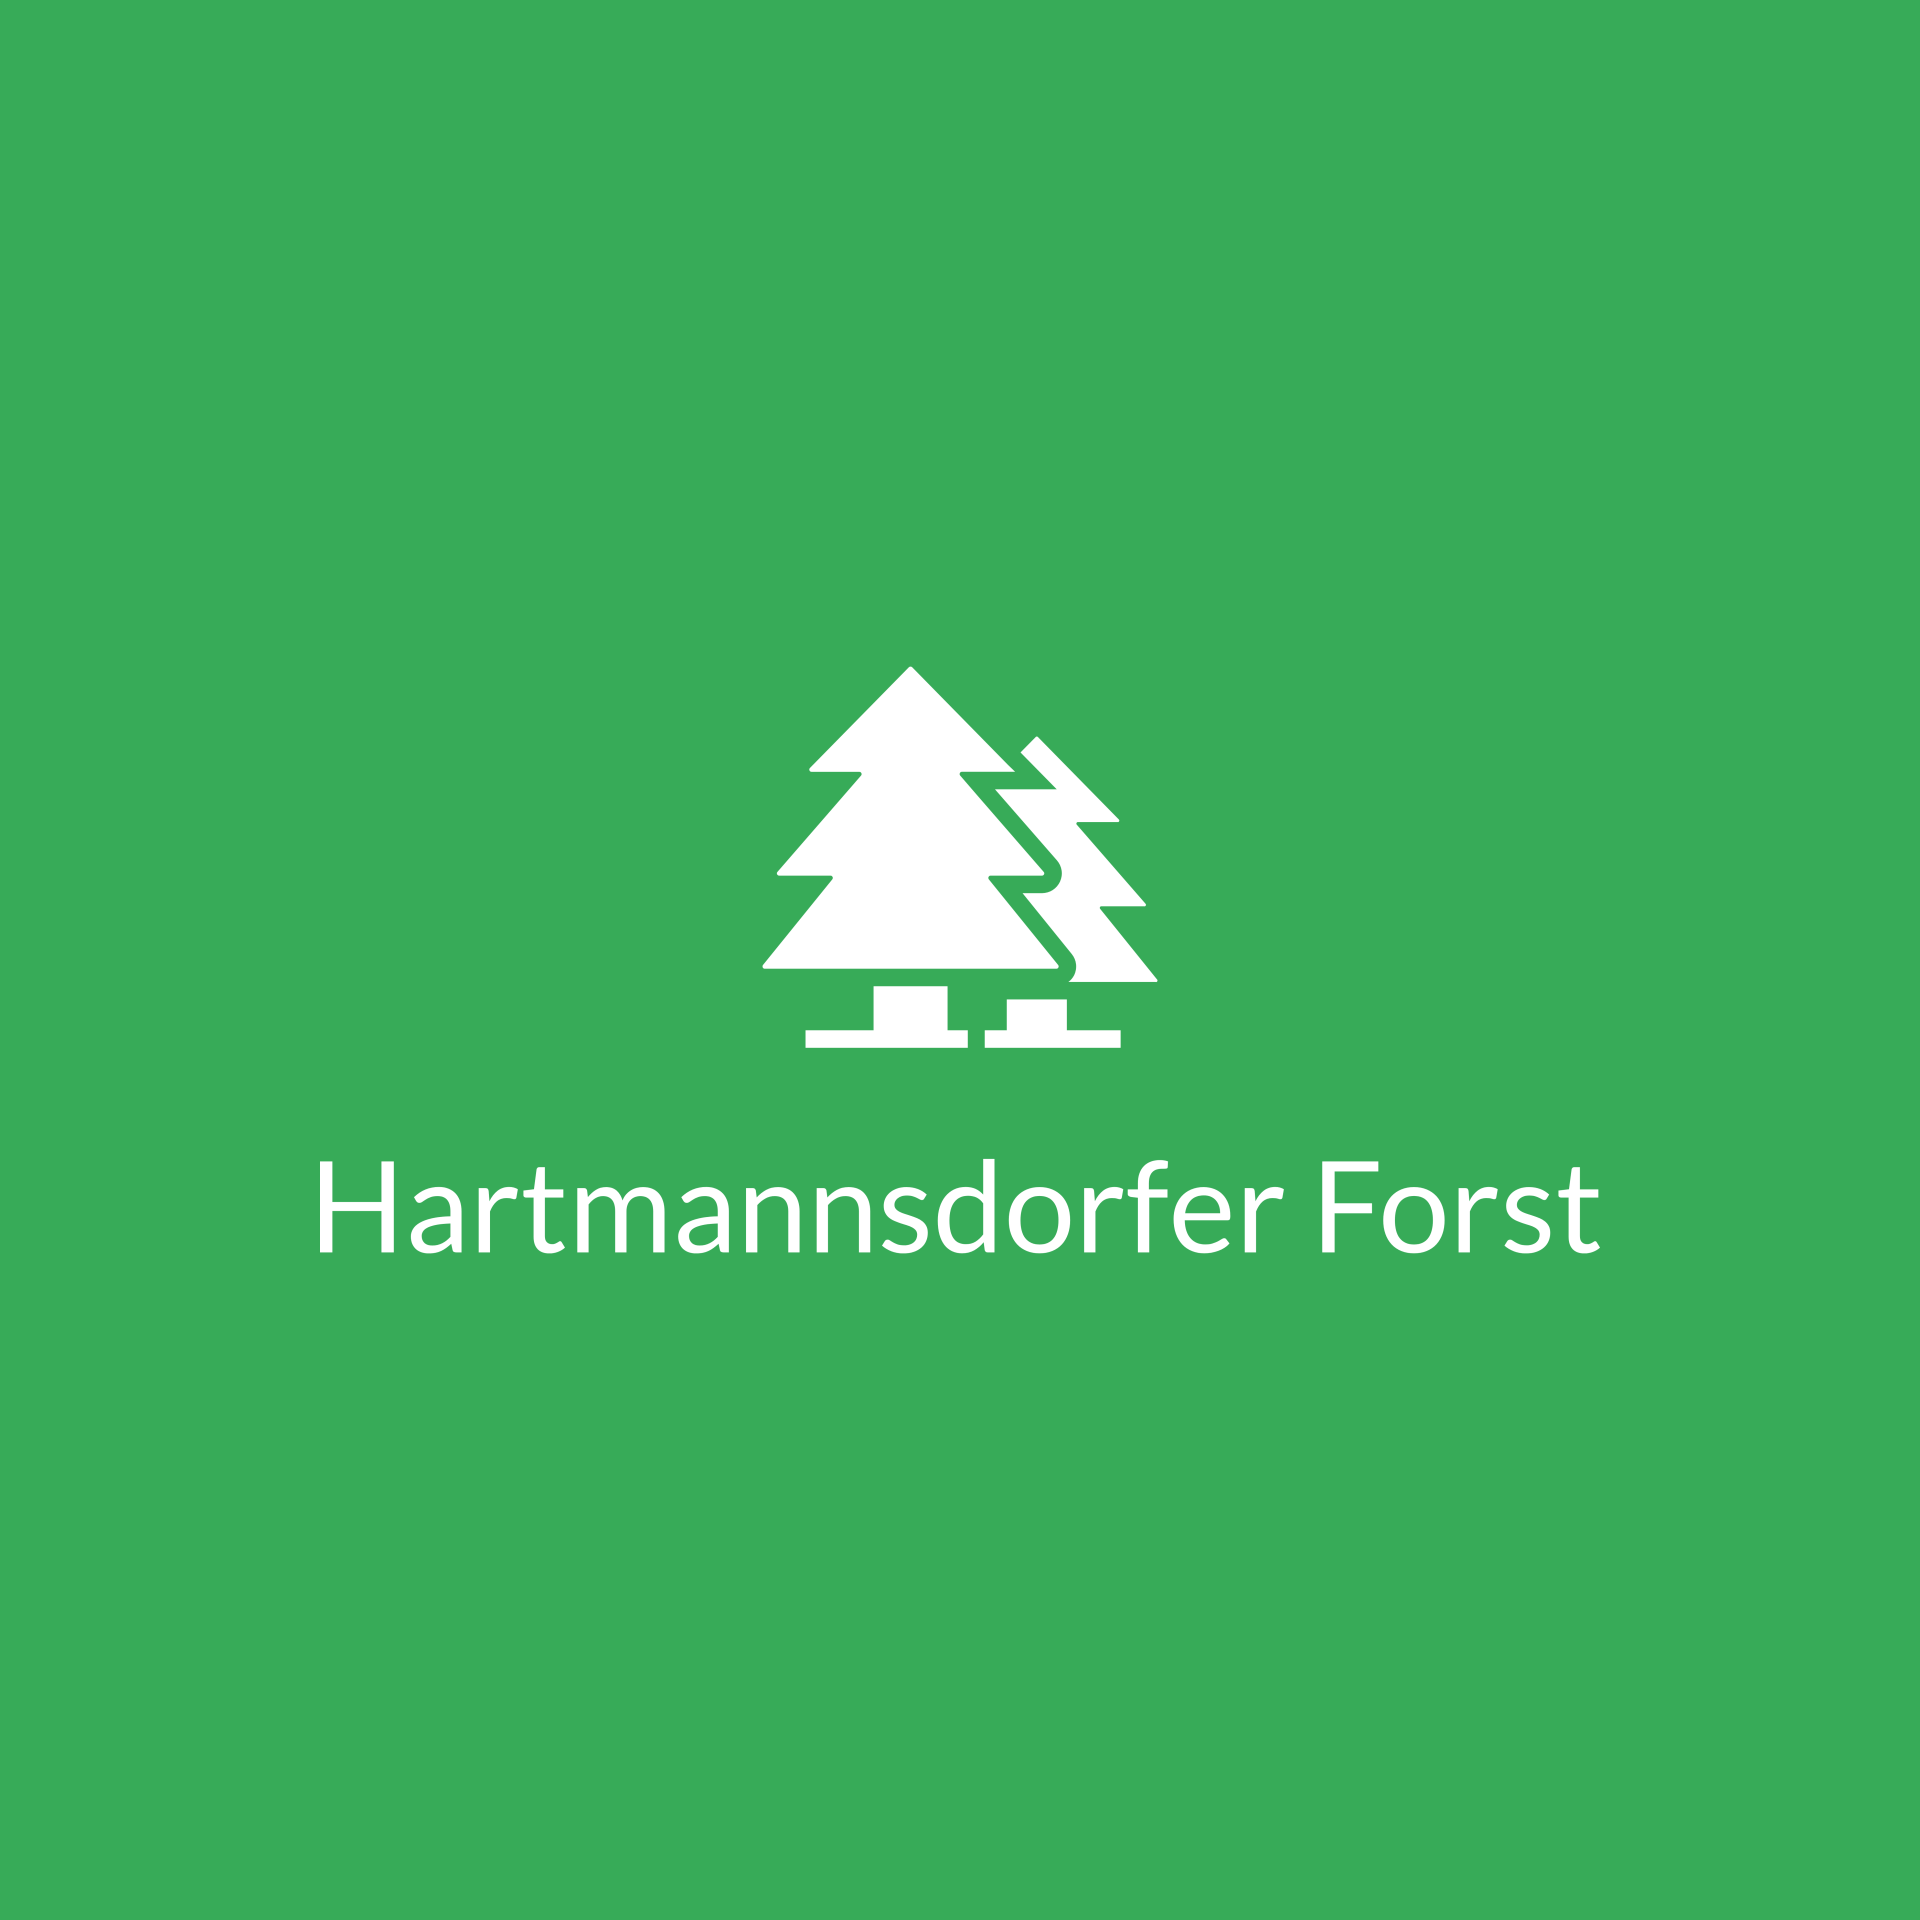 (c) Hartmannsdorfer-forst.de